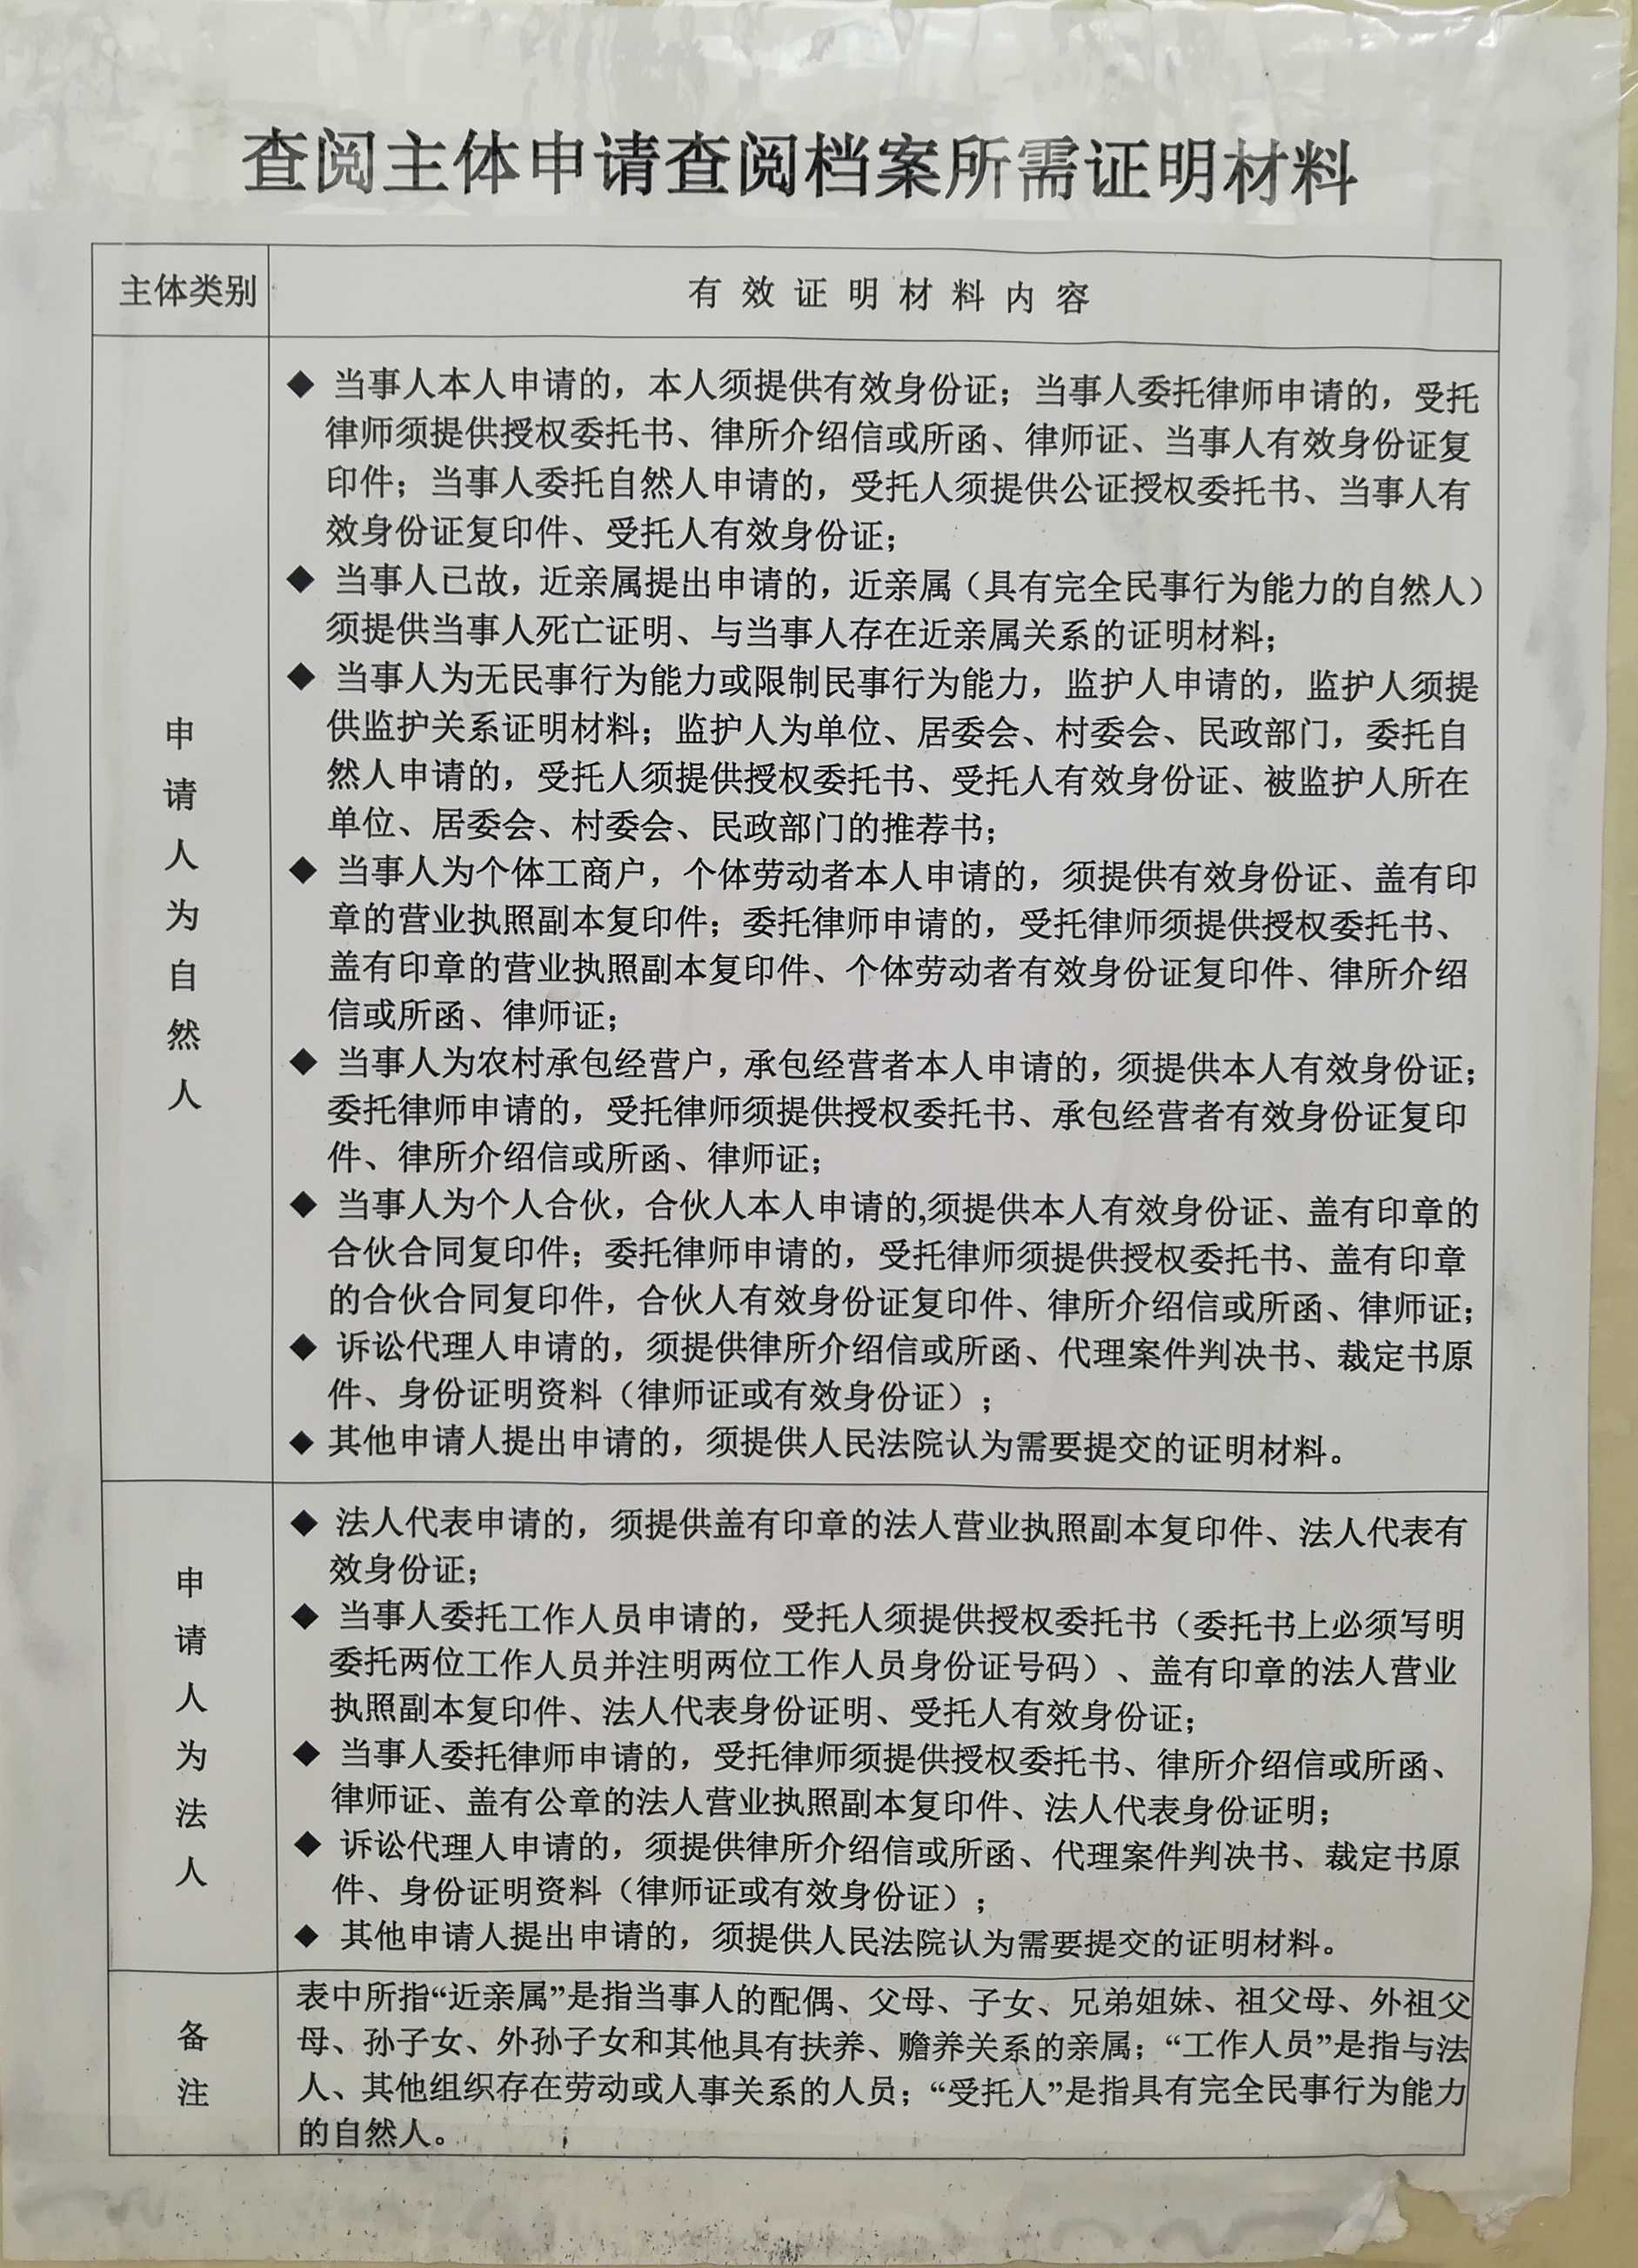 广州市中级人民法院档案室阅卷对外时间与所需材料